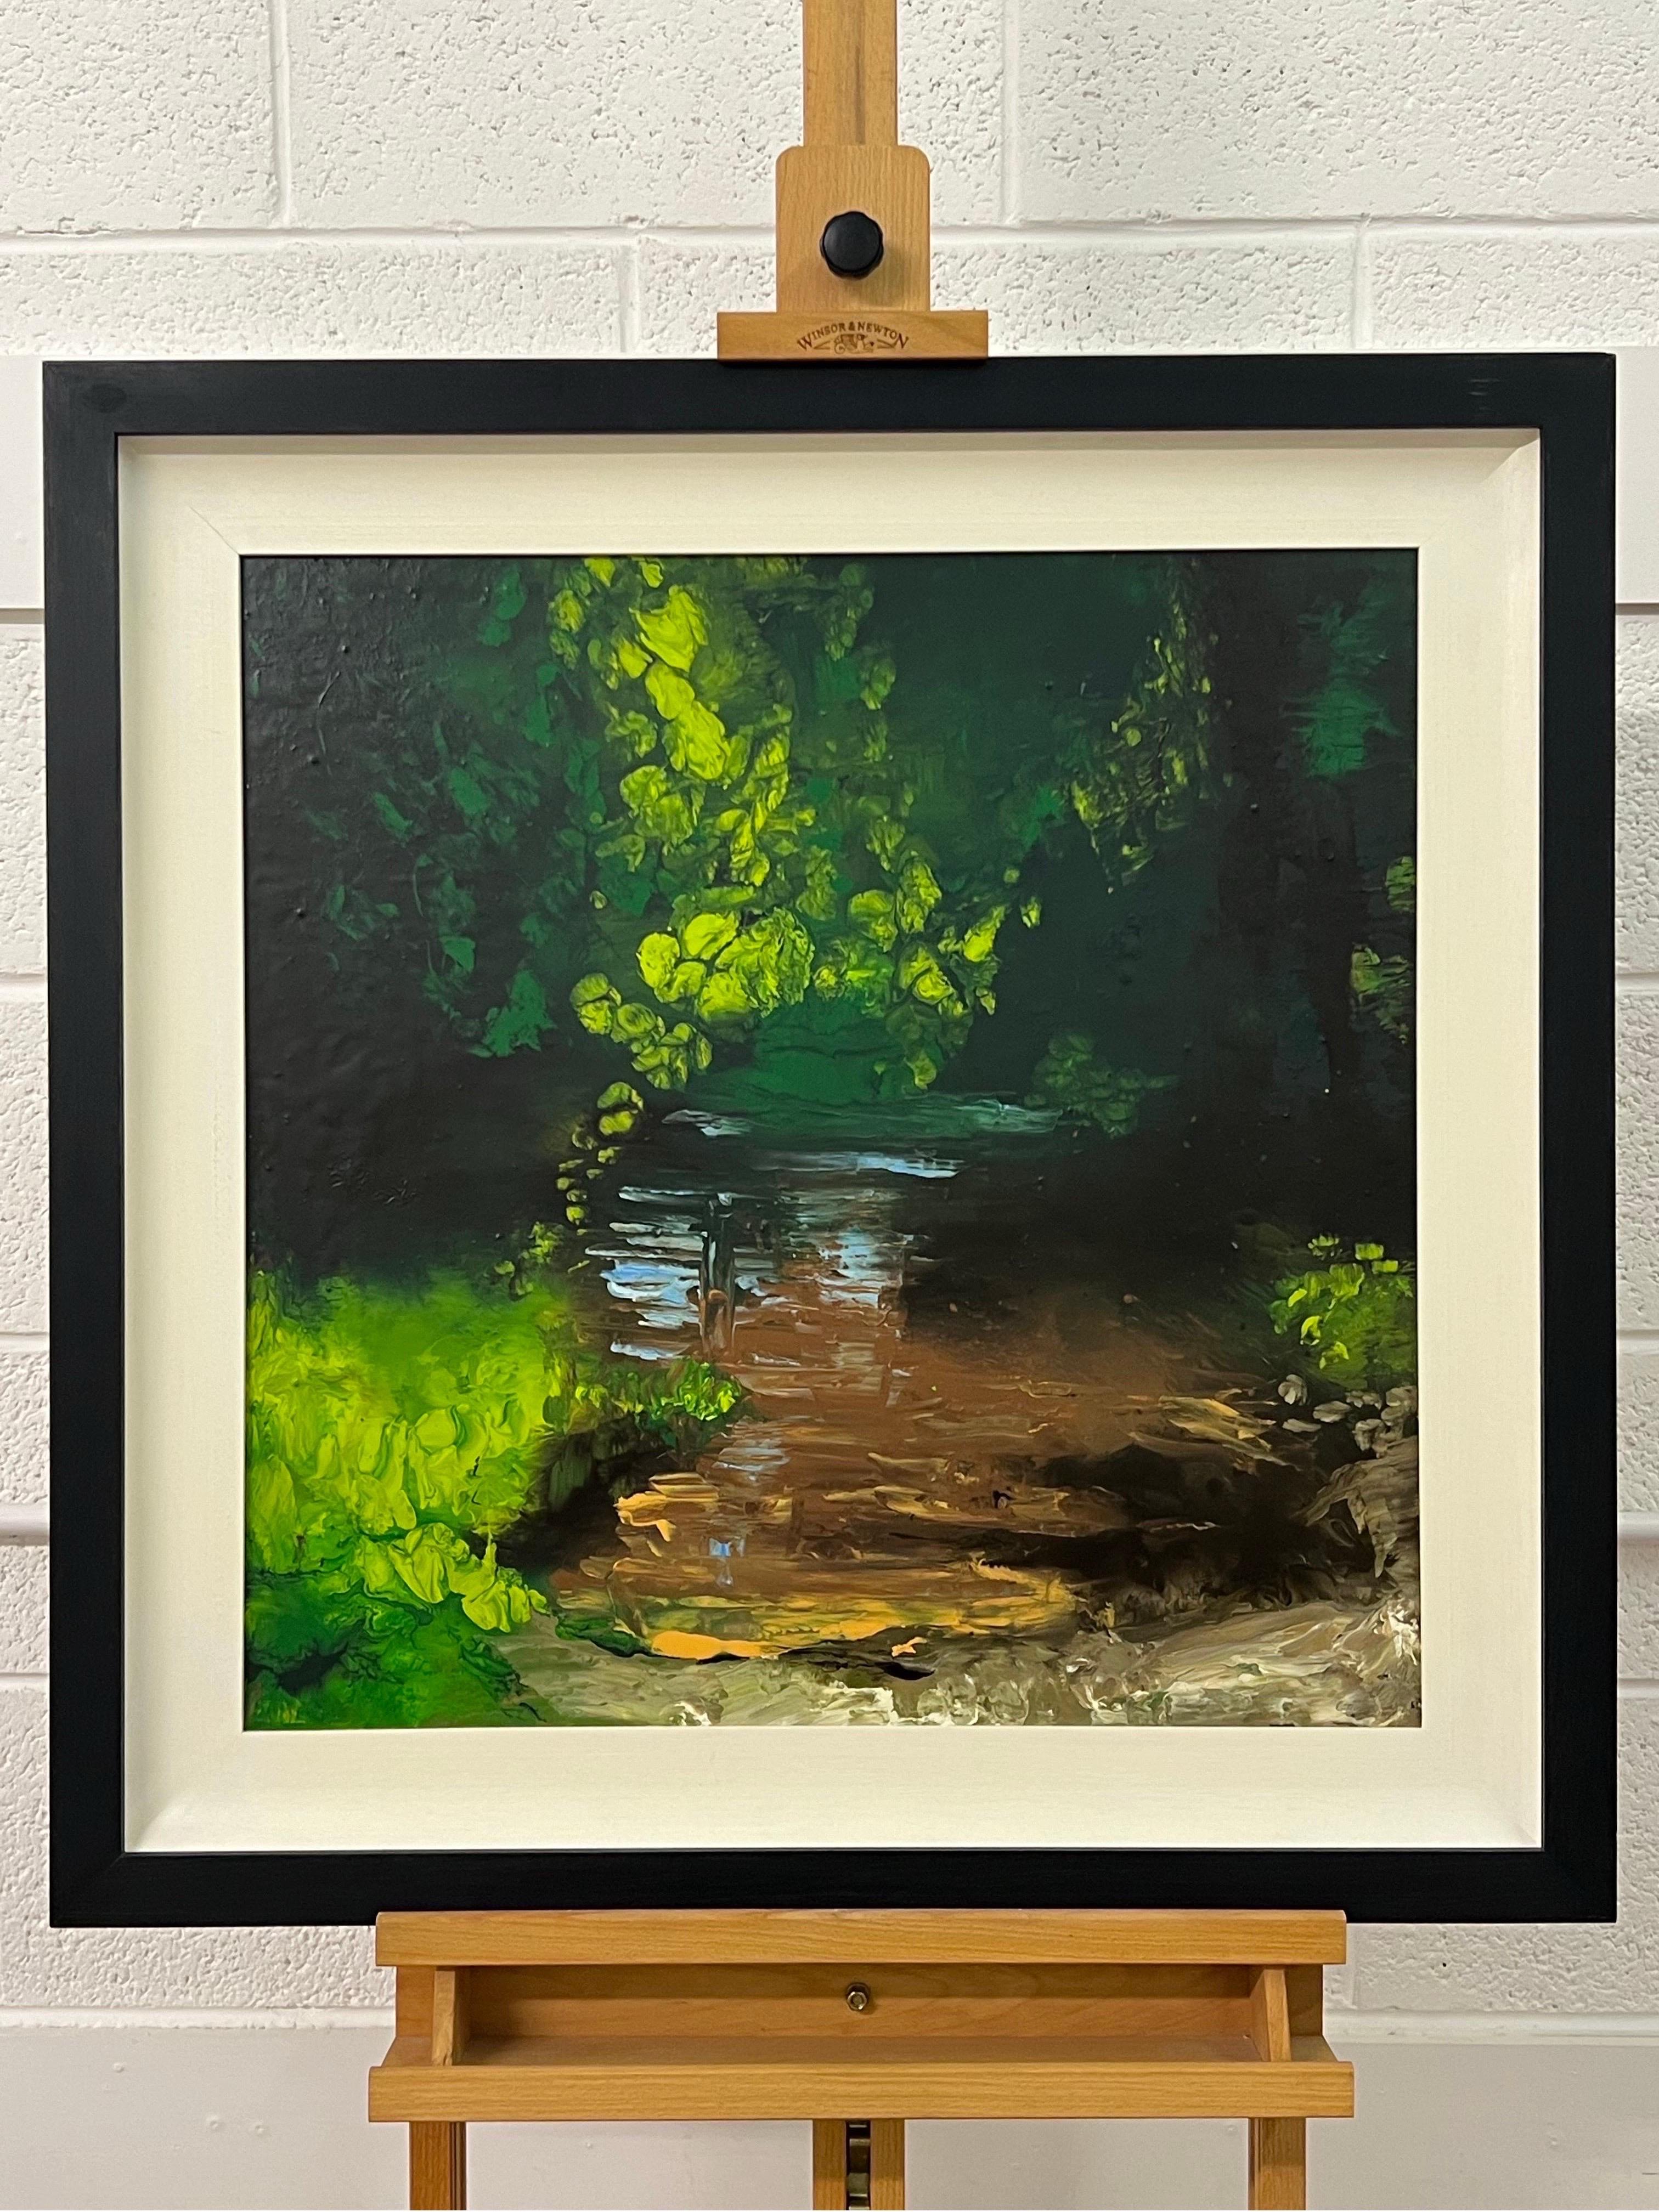 Peinture impressionniste de paysage fluvial anglais, huile originale d'un artiste britannique. Une œuvre d'art mixte vernie mat sur toile à bords profonds capturant les reflets chatoyants de la lumière du soleil sur la surface de l'eau. Une scène